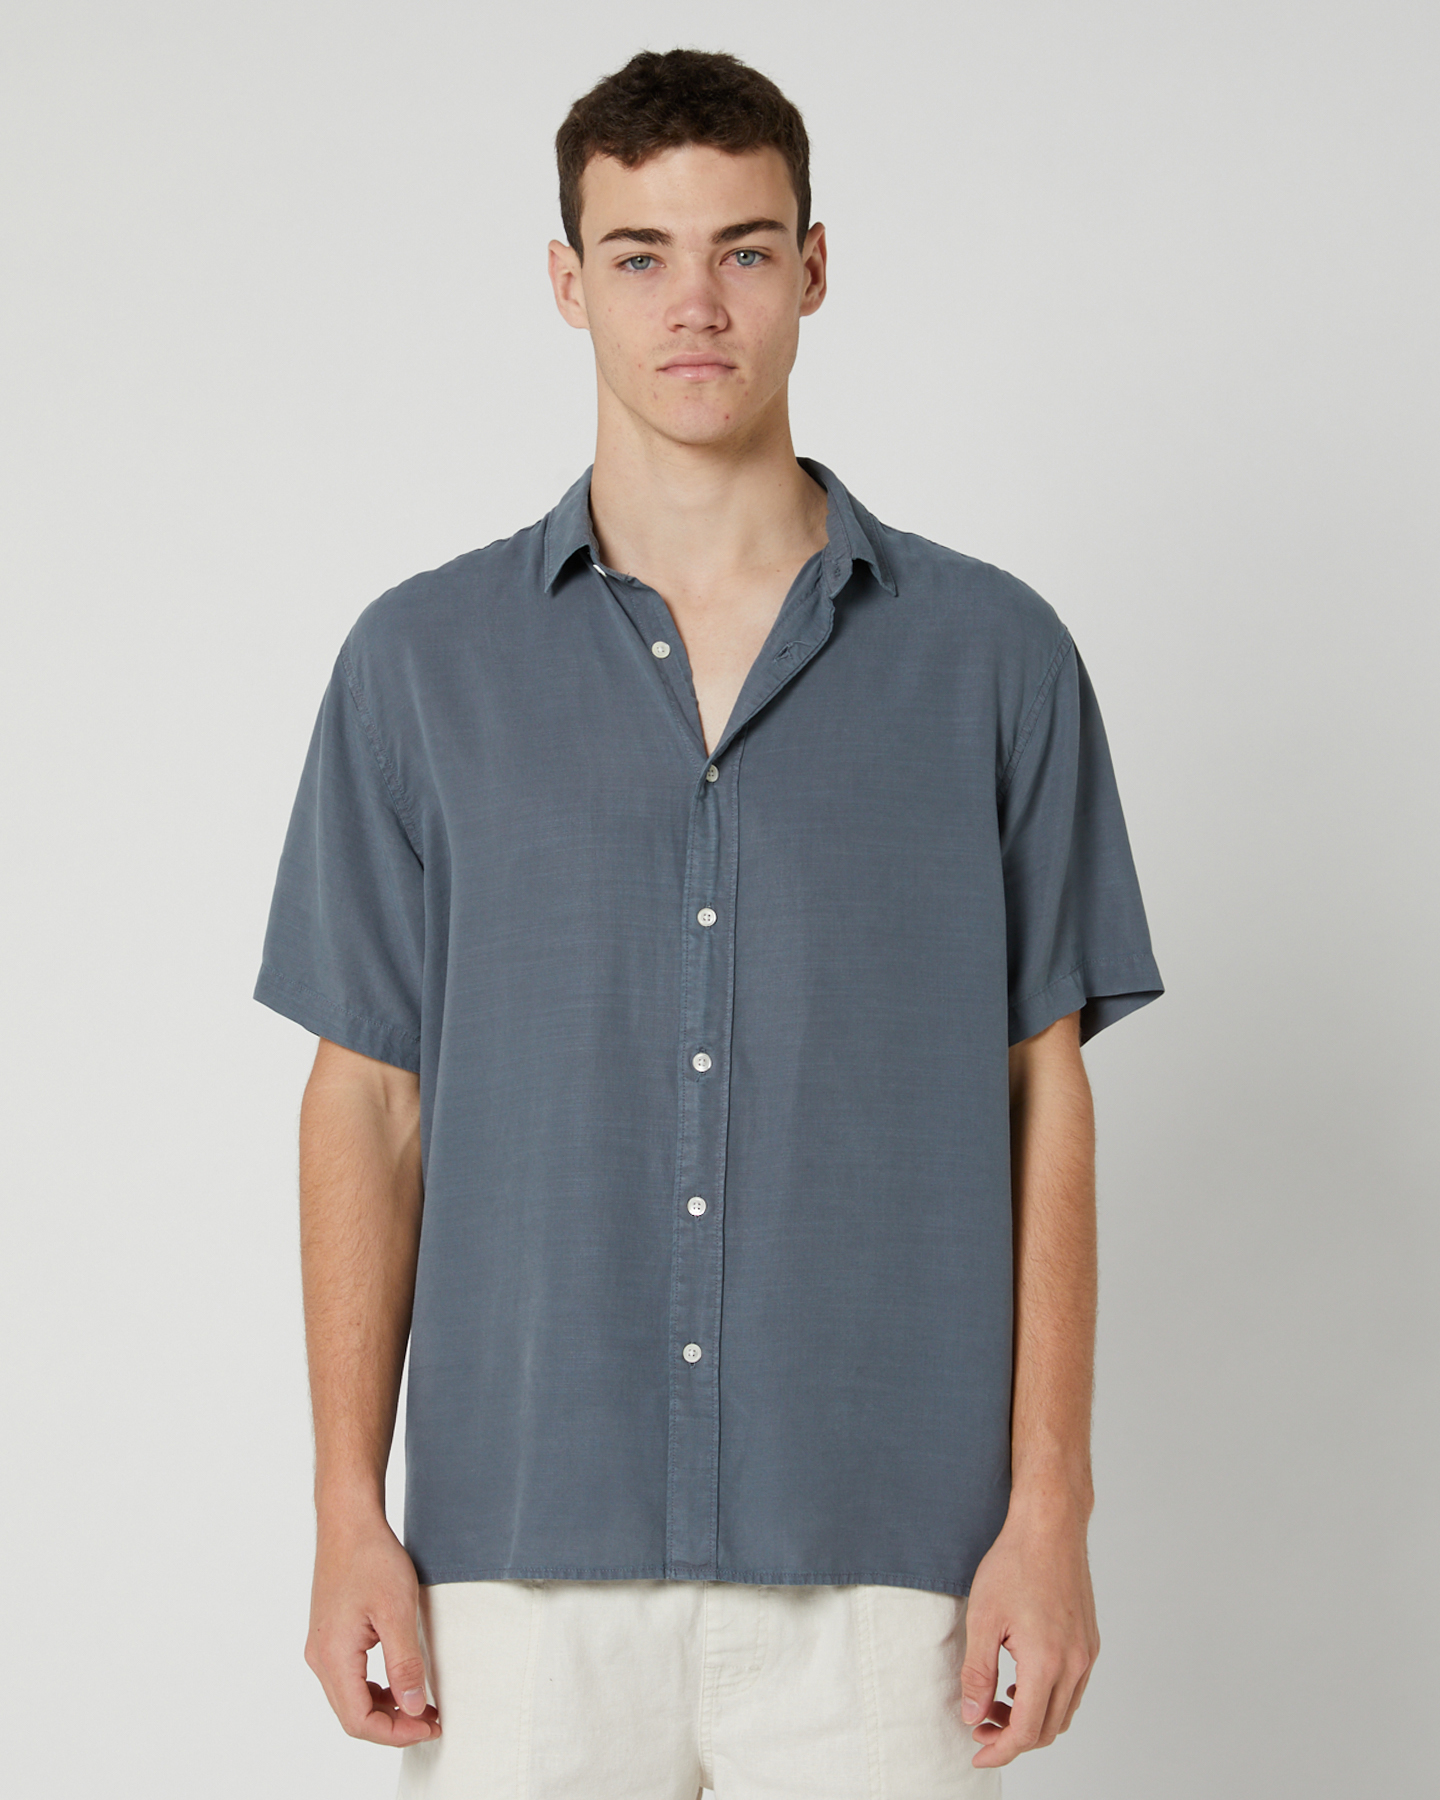 Academy Brand Stevens Ss Shirt - Harbour Blue | SurfStitch